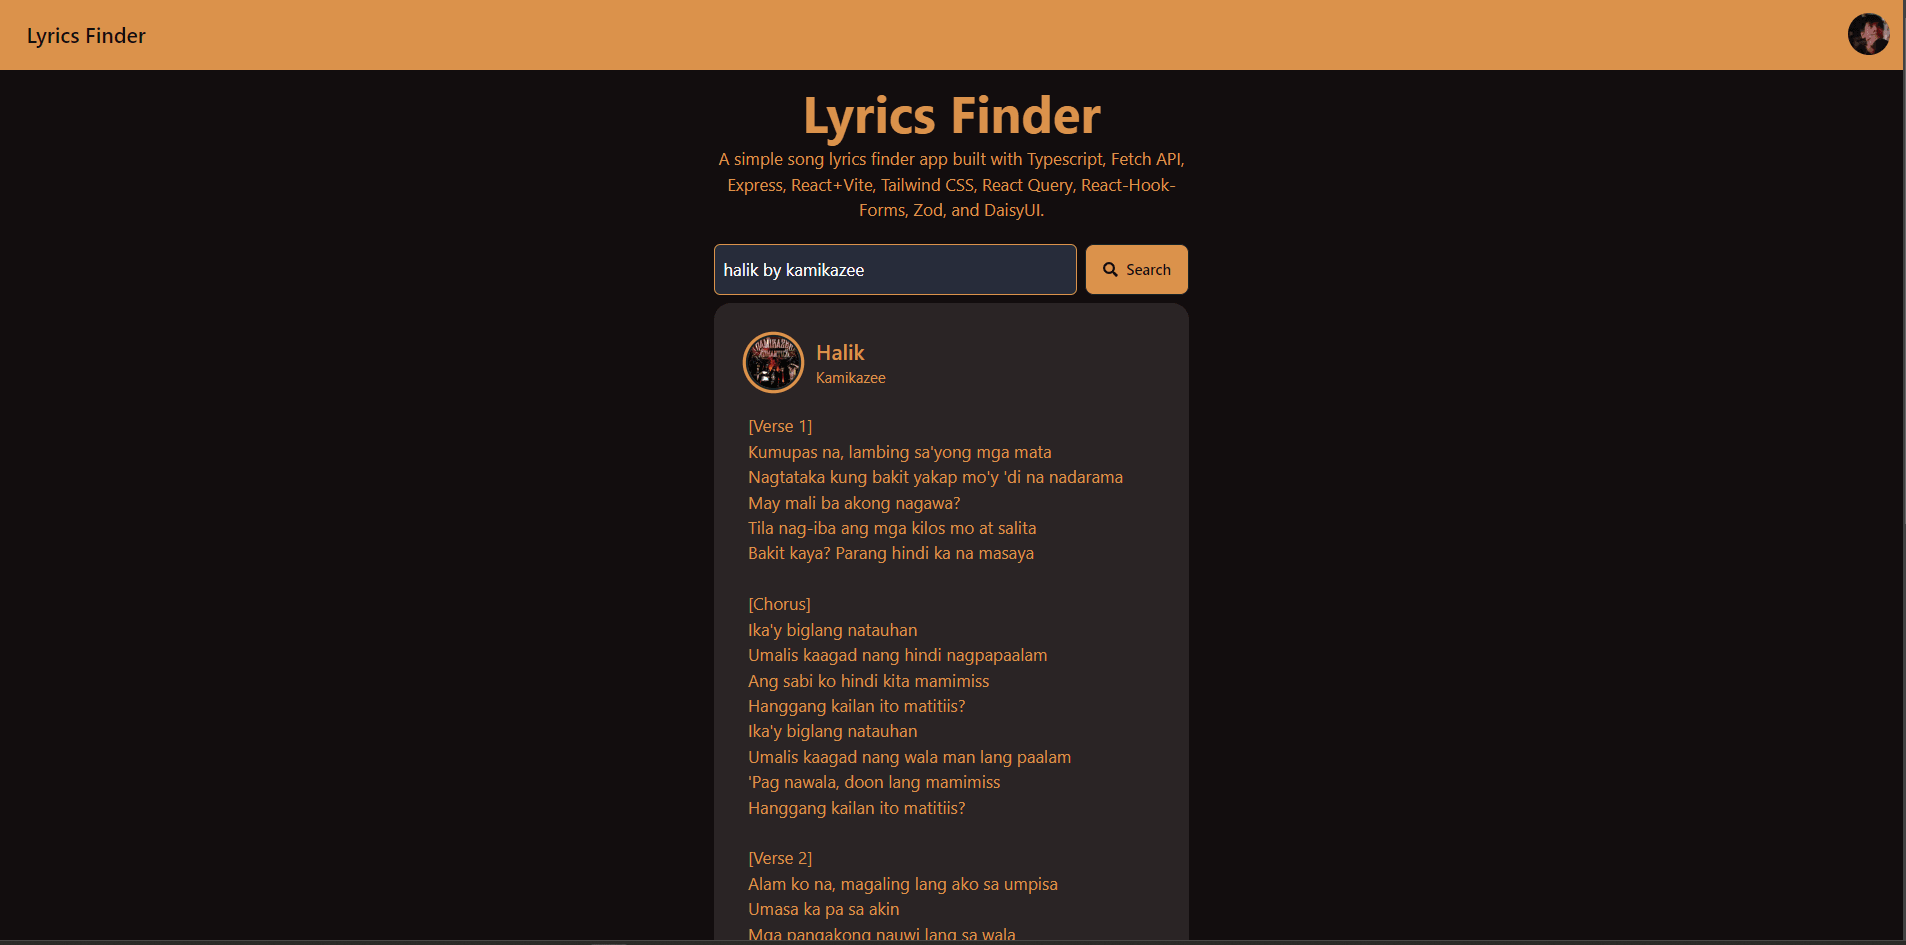 Lyrics Finder